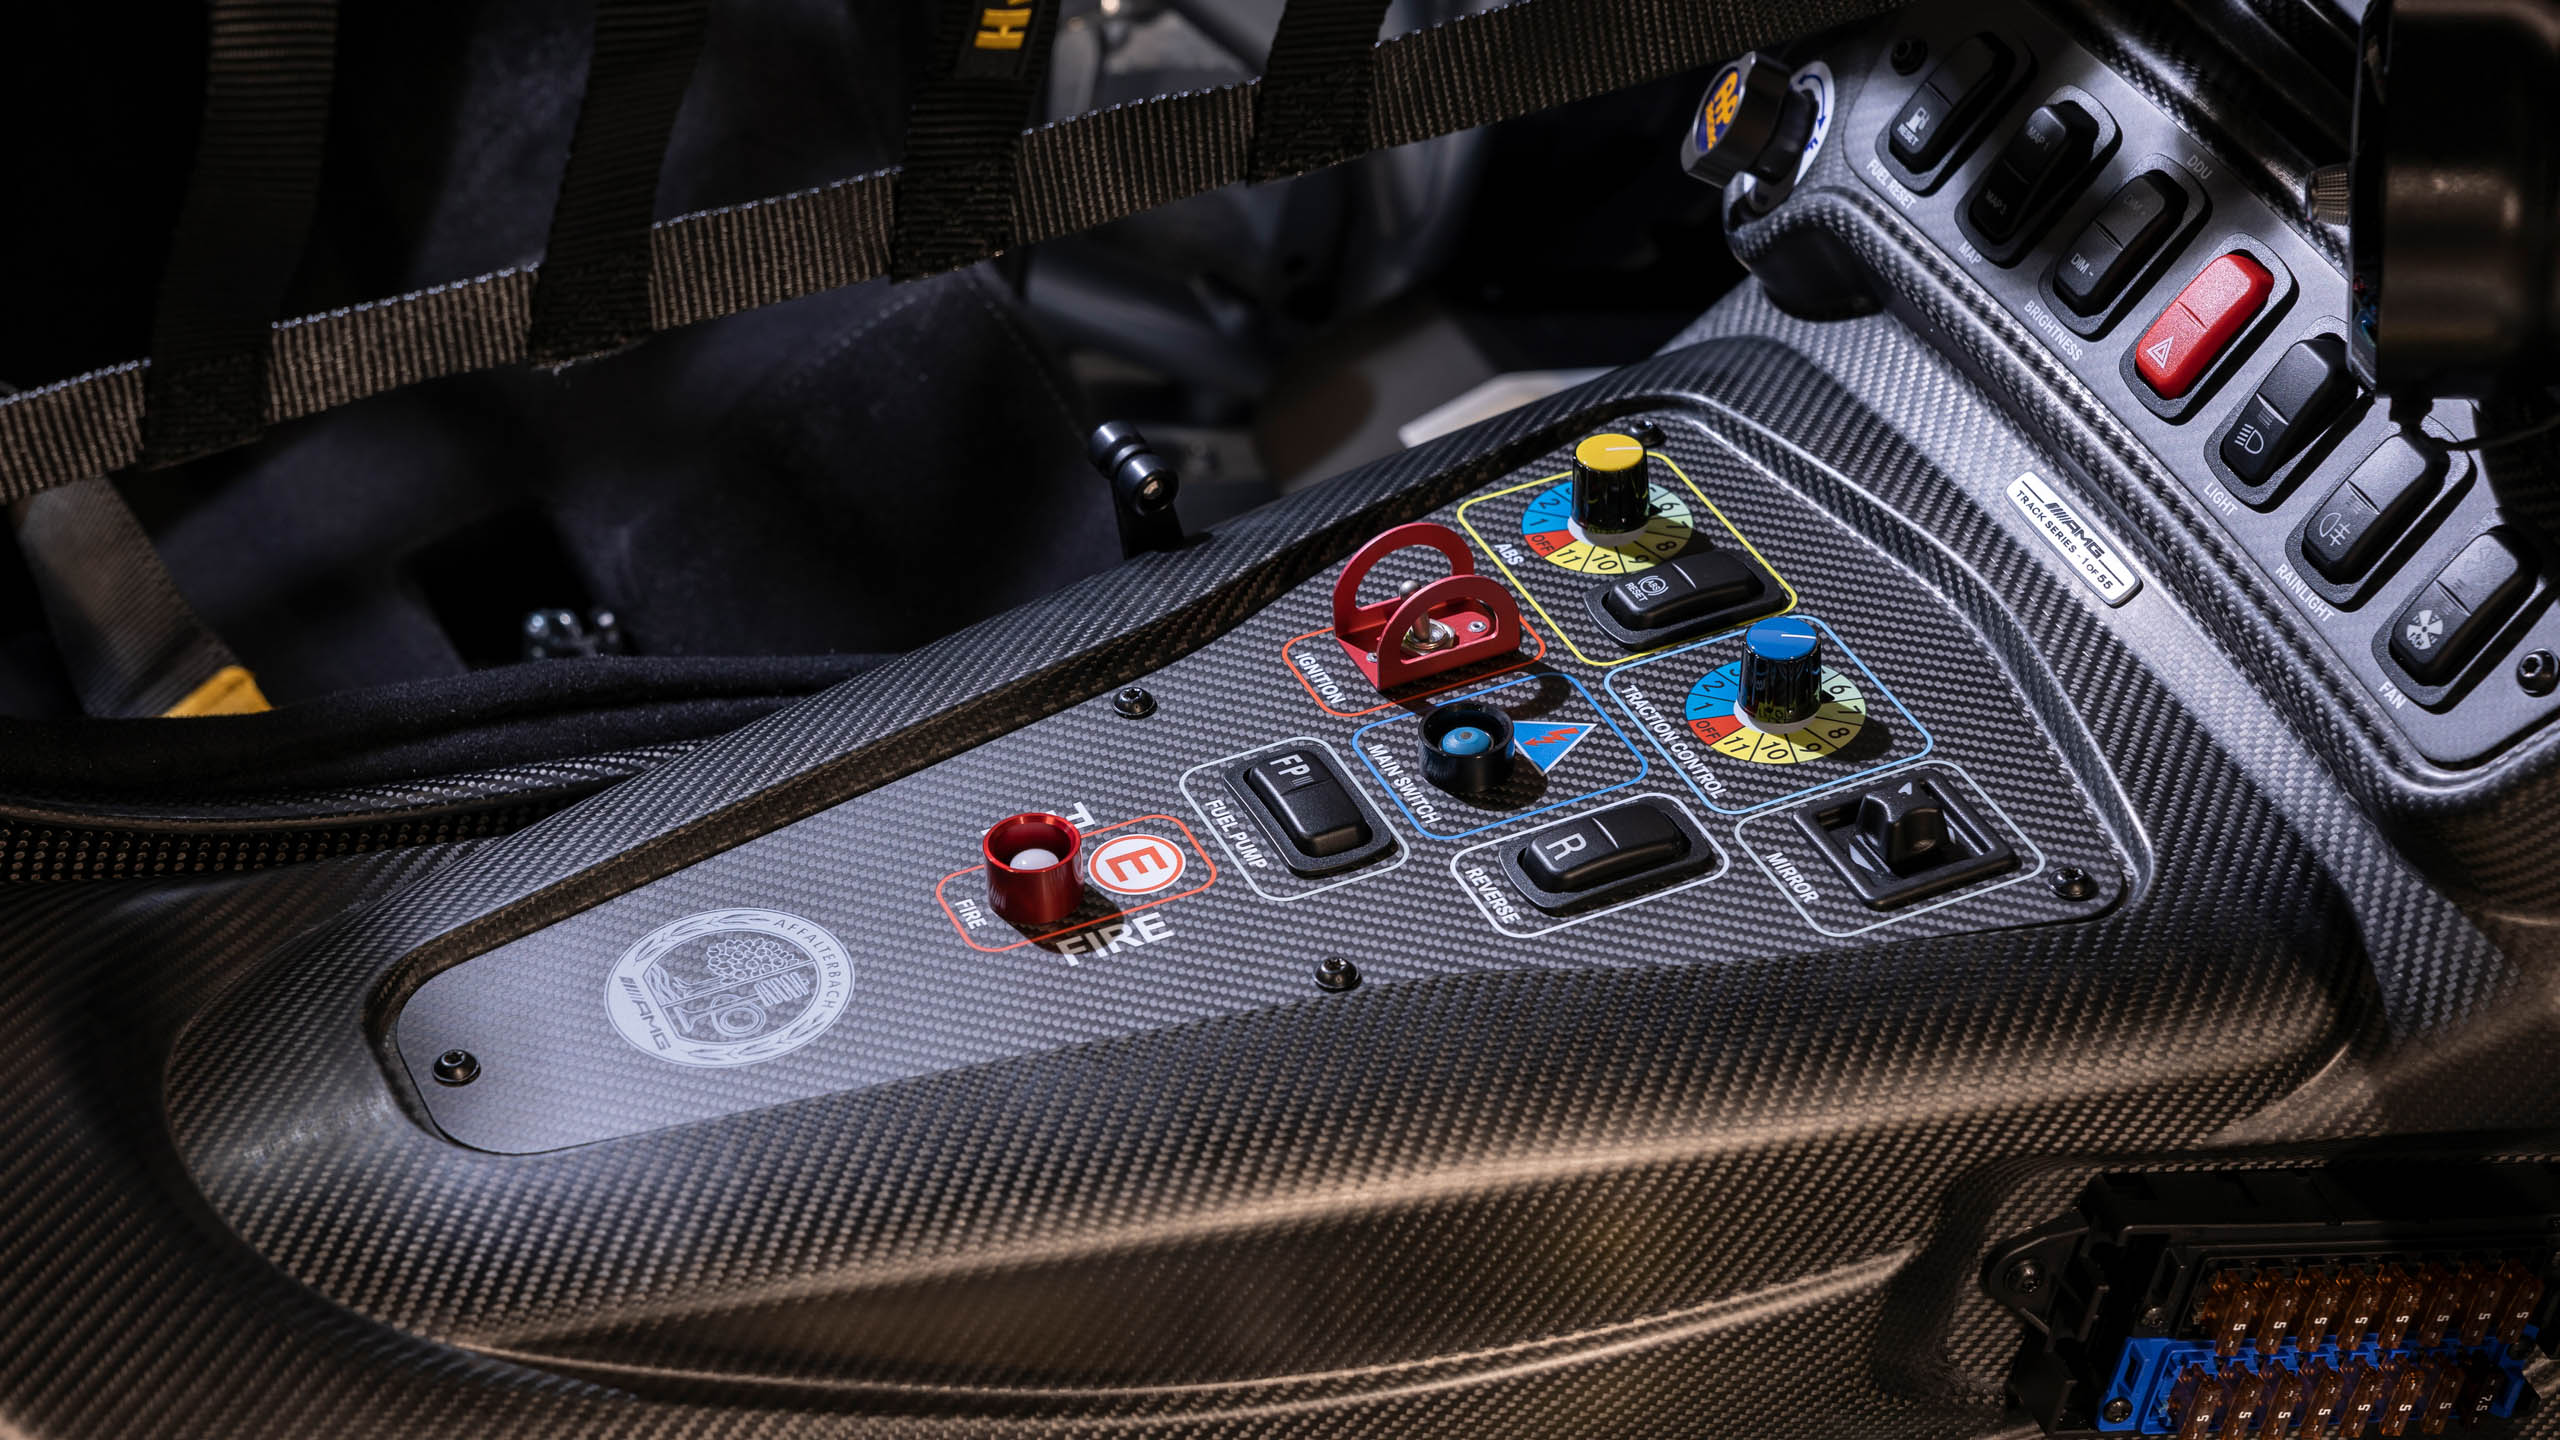 2022 Mercedes-AMG GT Track Series | Fanaticar Magazin